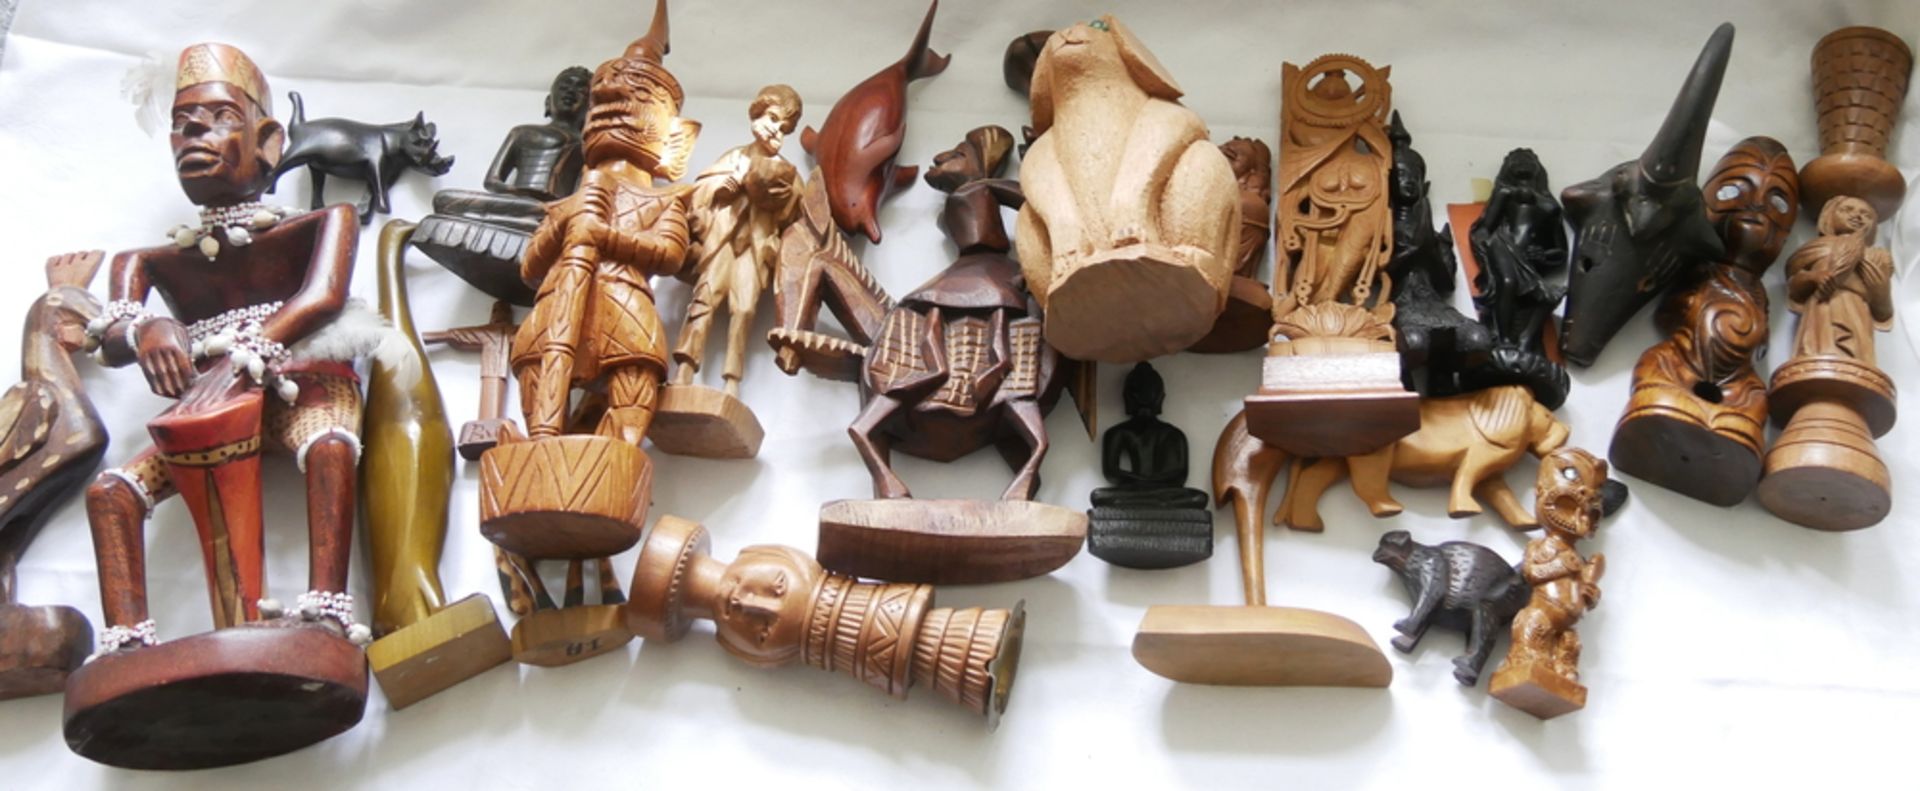 Lot Holzfiguren aus verschiedenen Länder, dabei Tiere, Götter, etc. Bitte besichtigen!